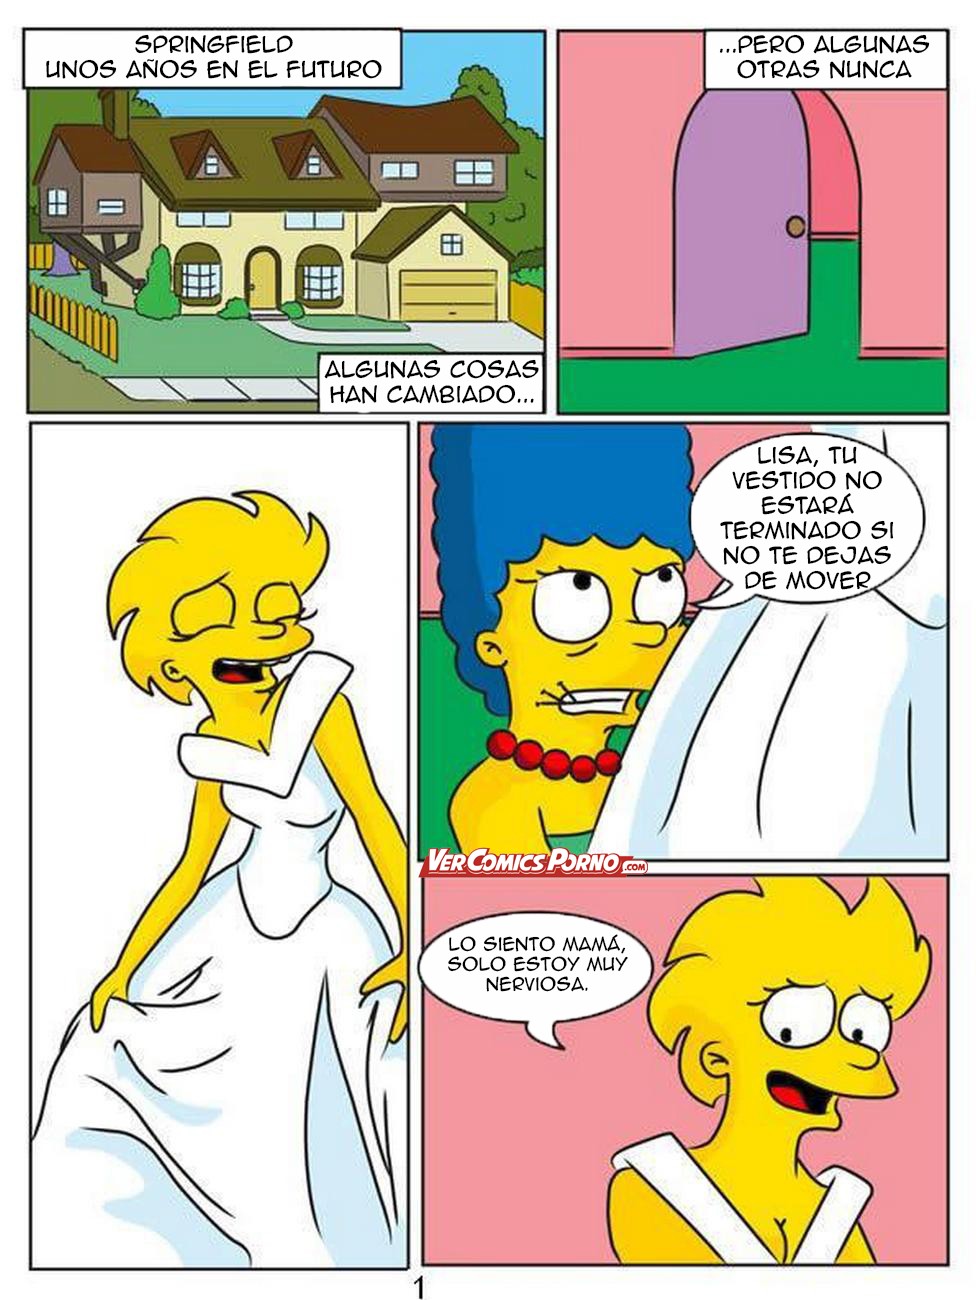 Pornos Simpsons Maggi - Los Simpsons: Lisa y Maggie teniendo una aventura lÃ©sbica | gringo-center.ru